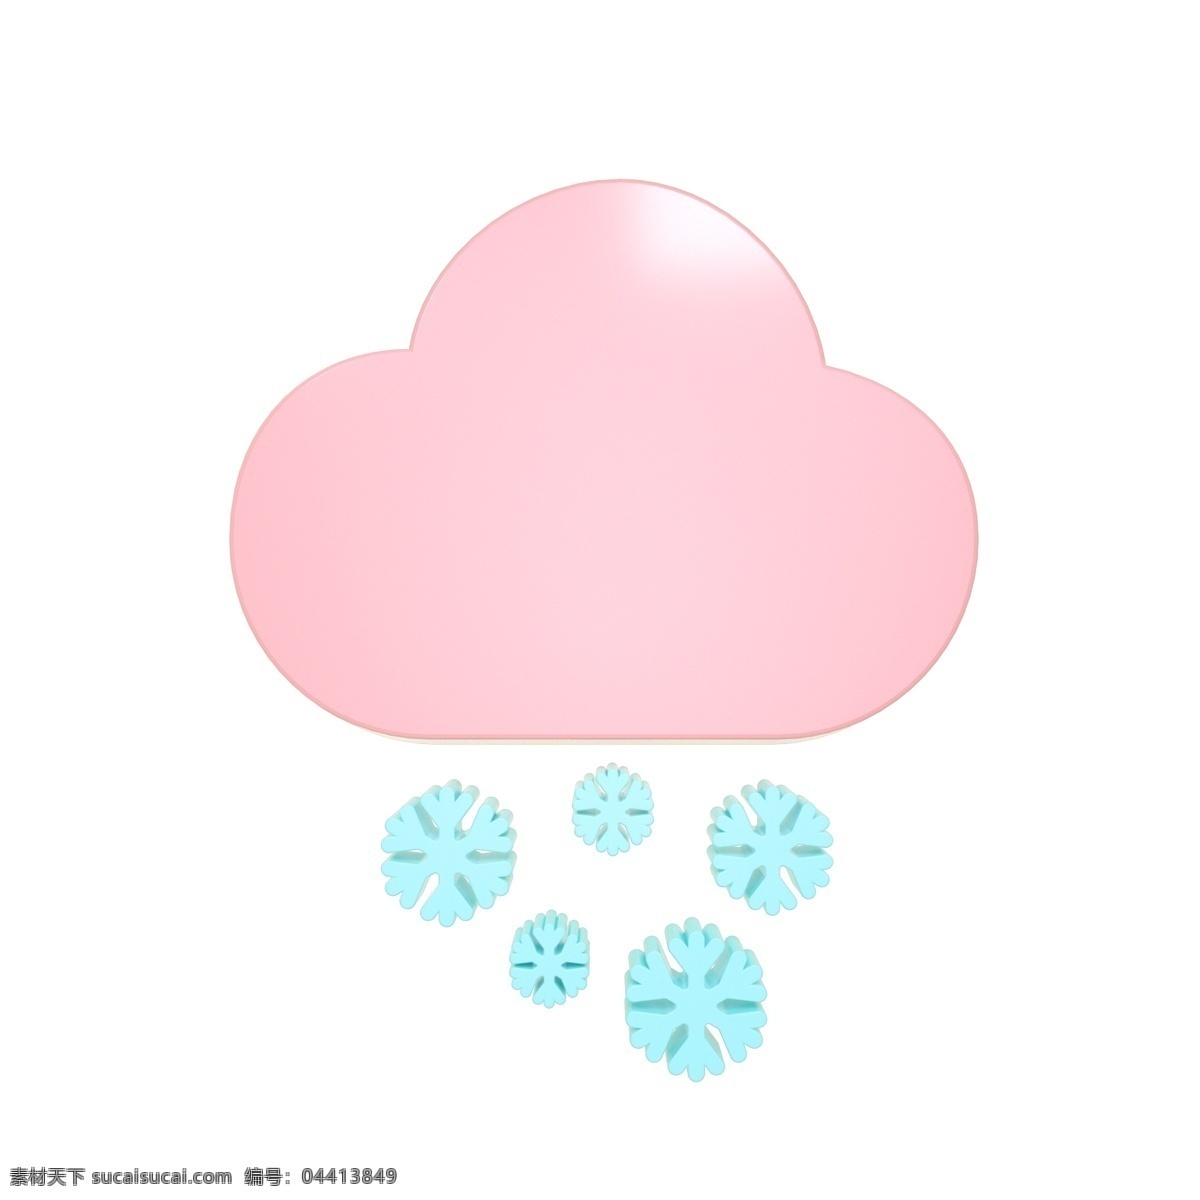 柔 色 天气 类 立体 图标 下雪 c4d 3d 柔色 粉色 青色 天气类图标 通用图标装饰 可爱 常用